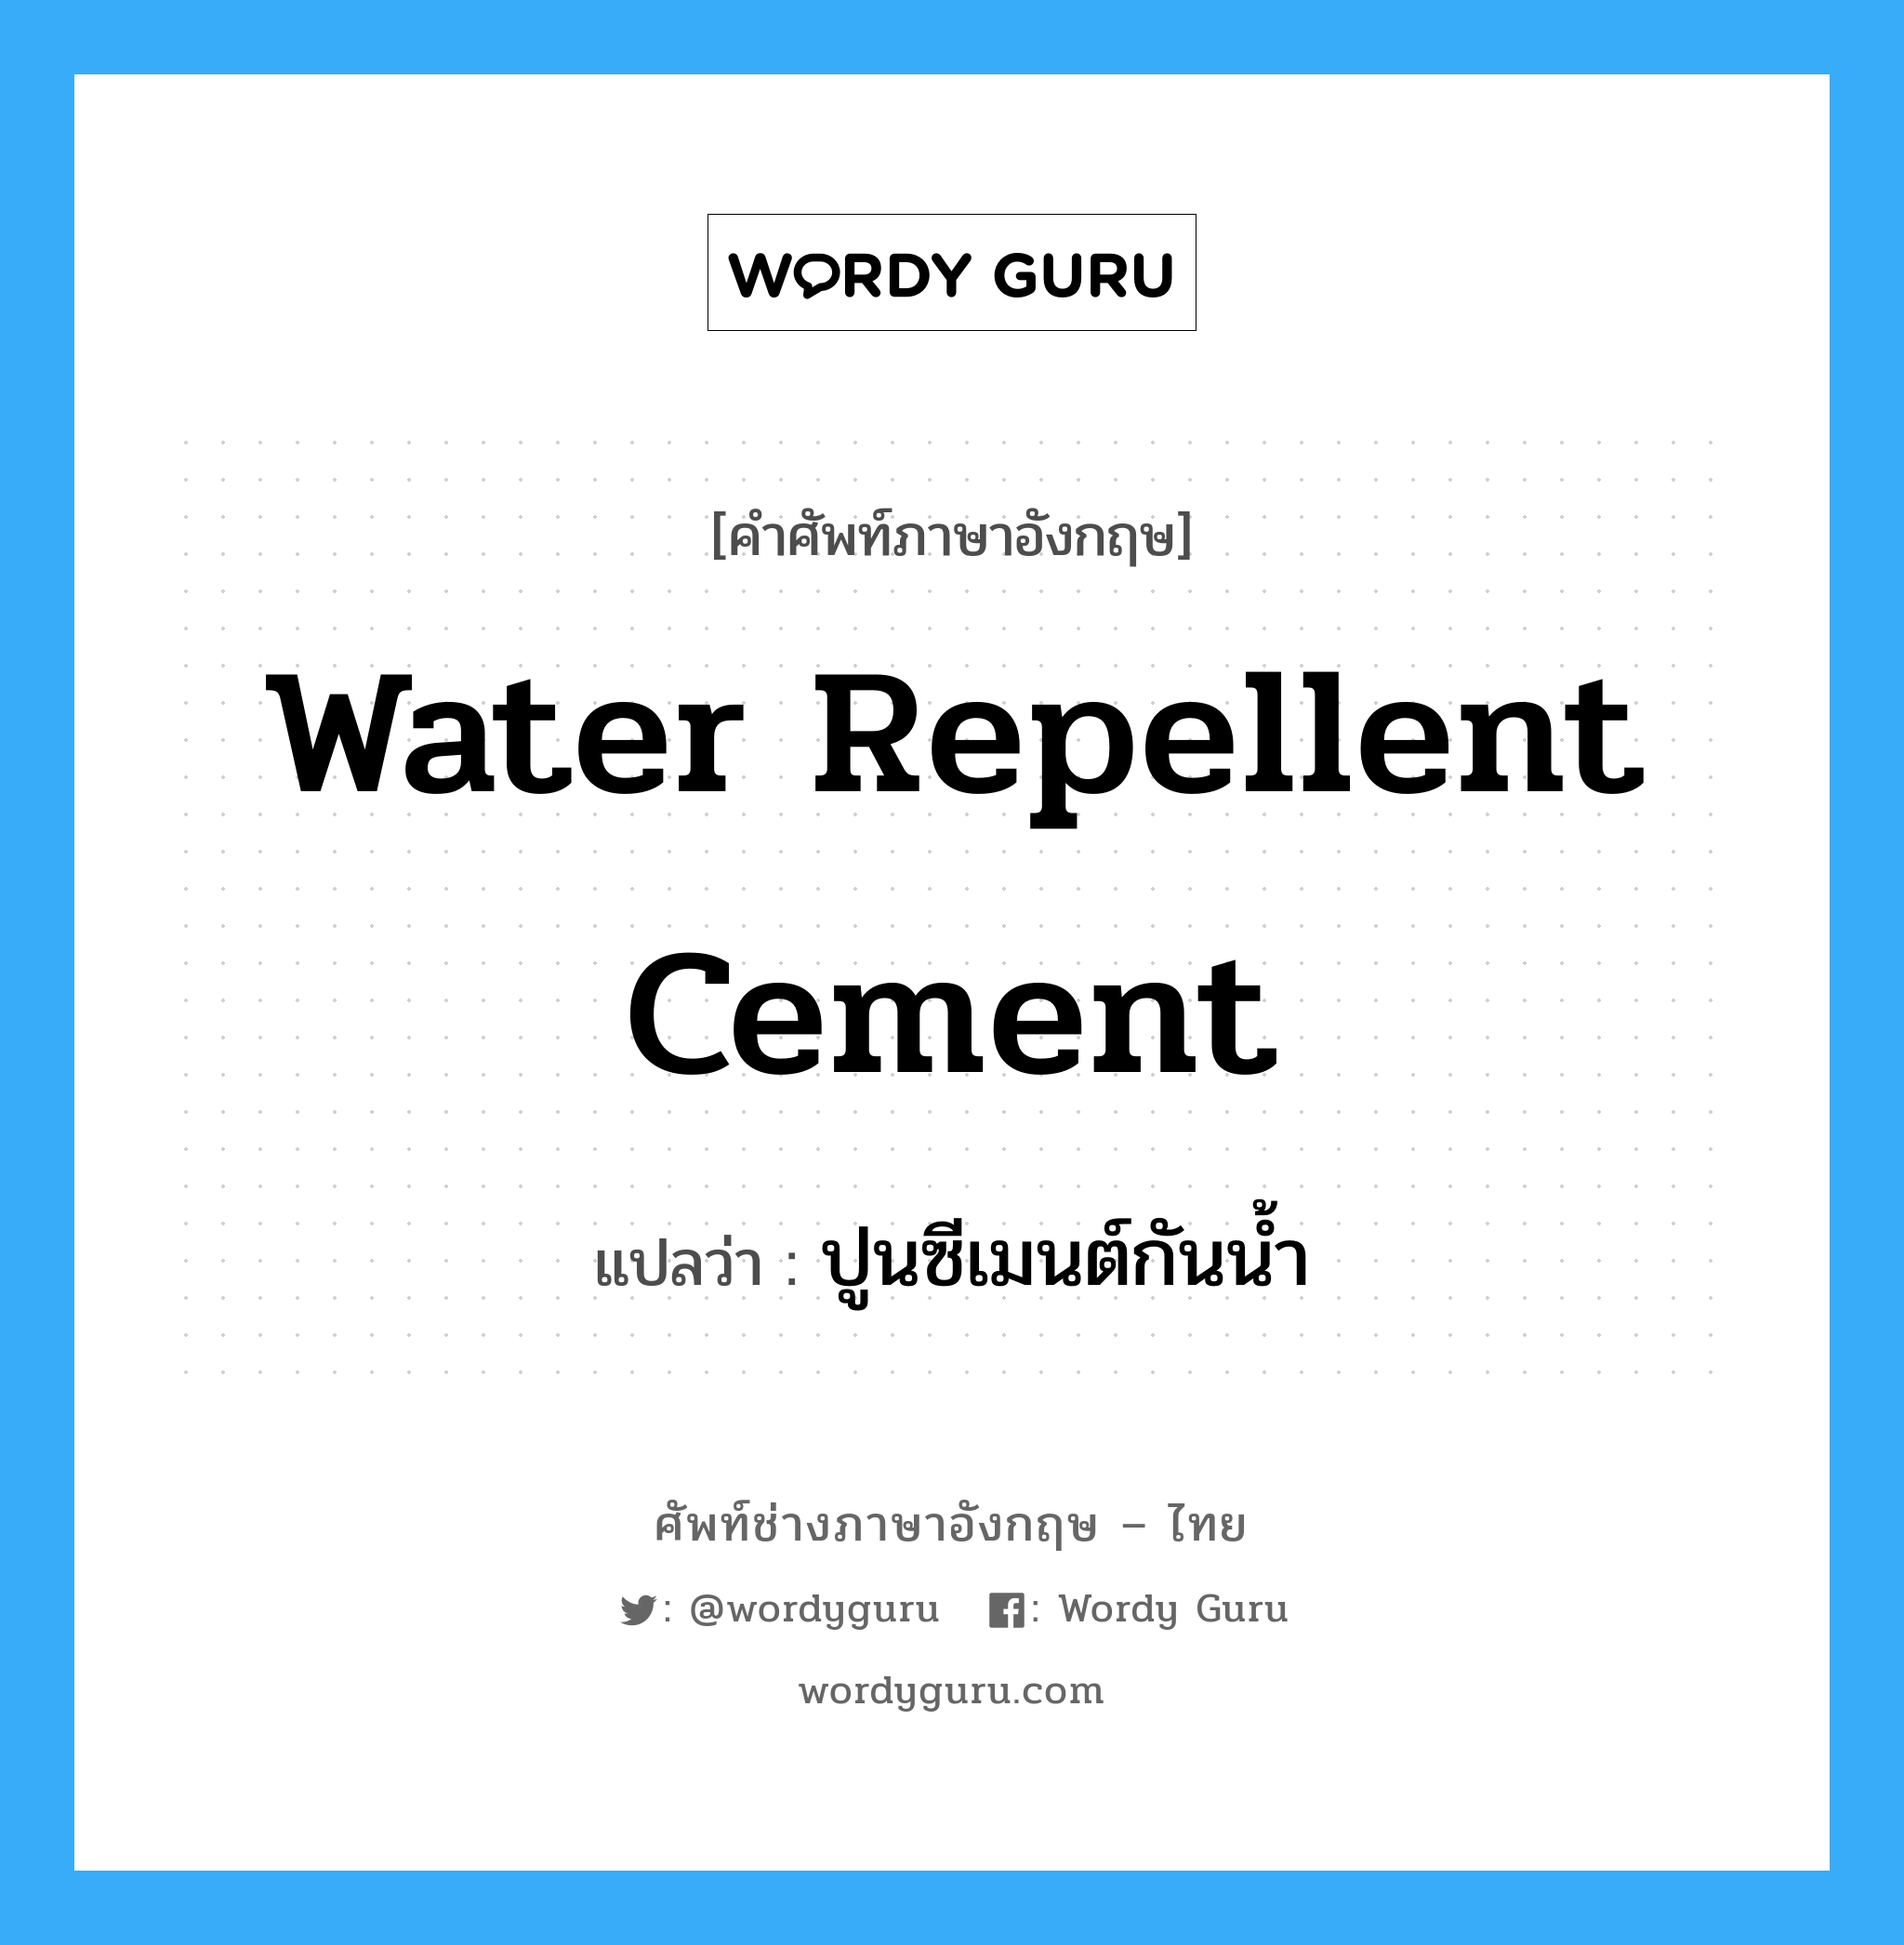 ปูนซีเมนต์กันน้ำ ภาษาอังกฤษ?, คำศัพท์ช่างภาษาอังกฤษ - ไทย ปูนซีเมนต์กันน้ำ คำศัพท์ภาษาอังกฤษ ปูนซีเมนต์กันน้ำ แปลว่า water repellent cement